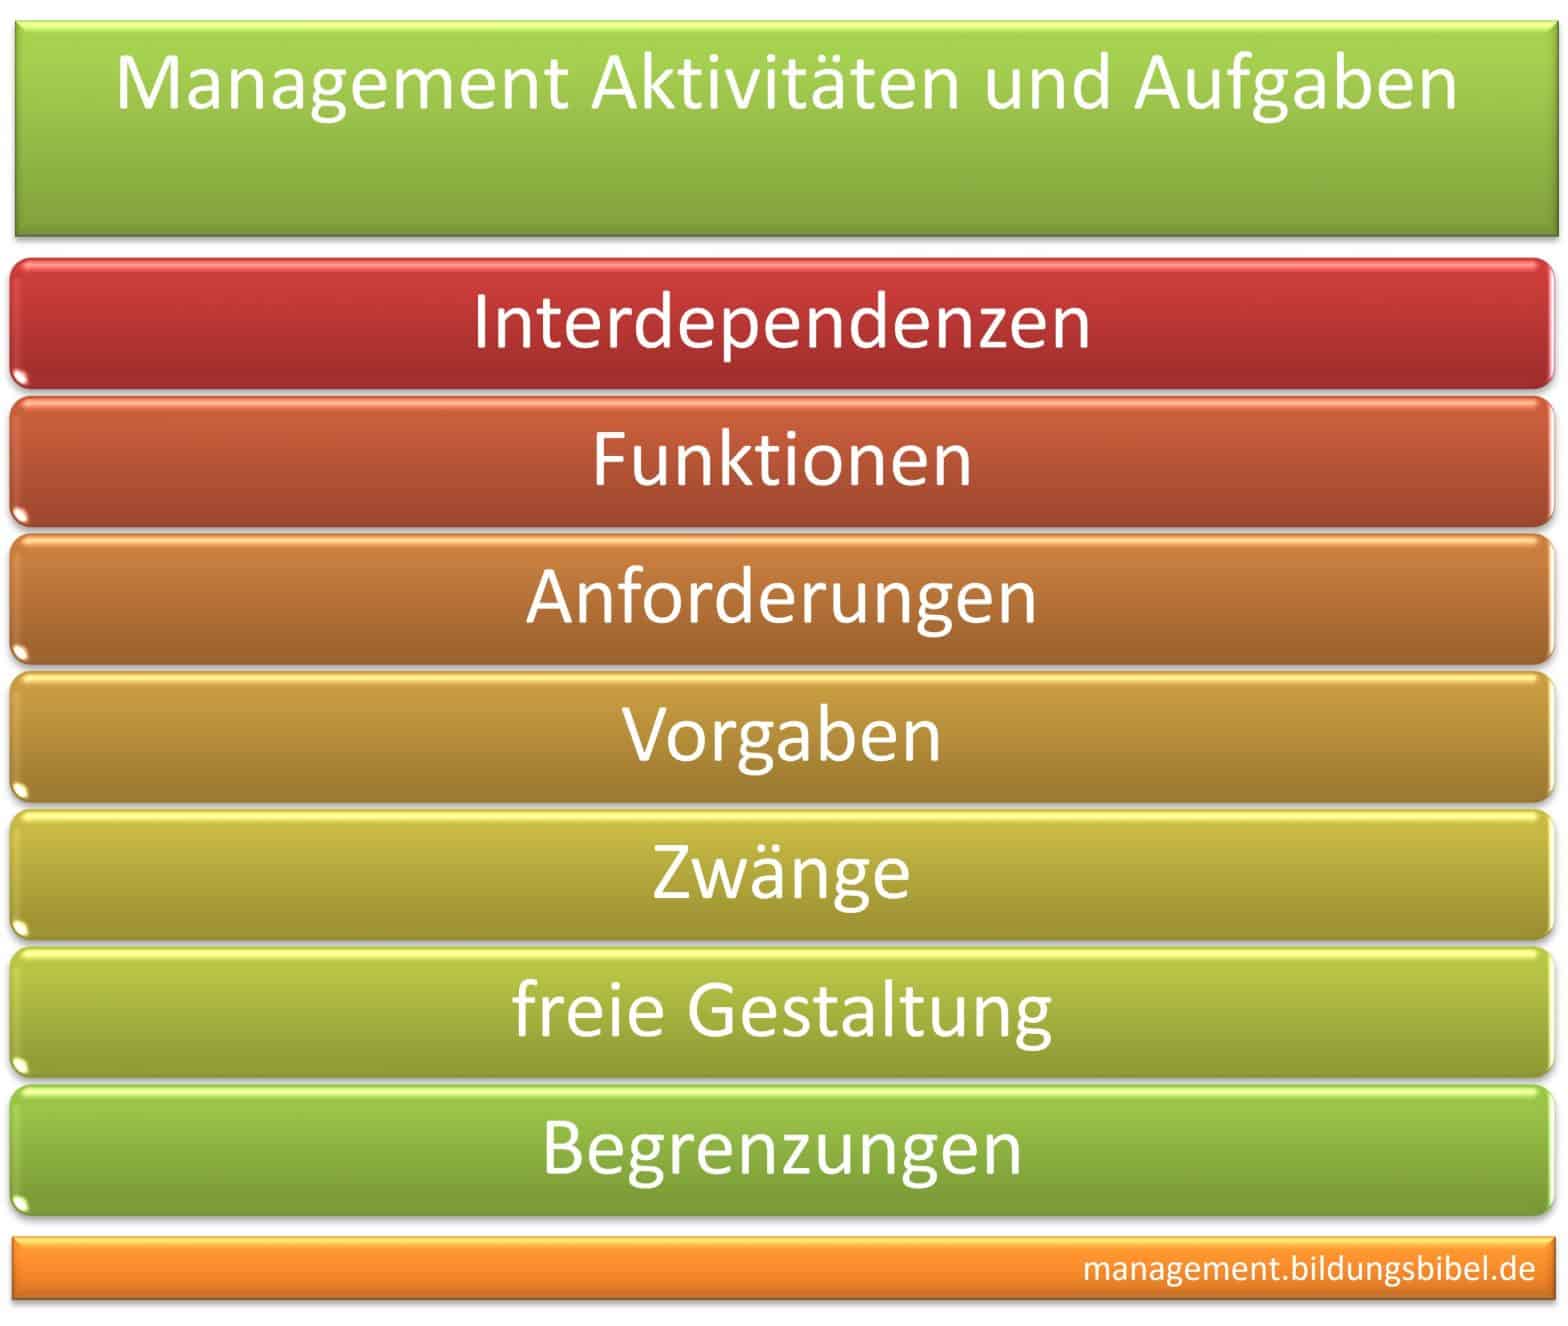 Management Funktionen nach Koontz u. O`Donell, 5 Bestandteile: Planung, Organisation, Personaleinsatz, Führung und Kontrolle sowie Evaluation.